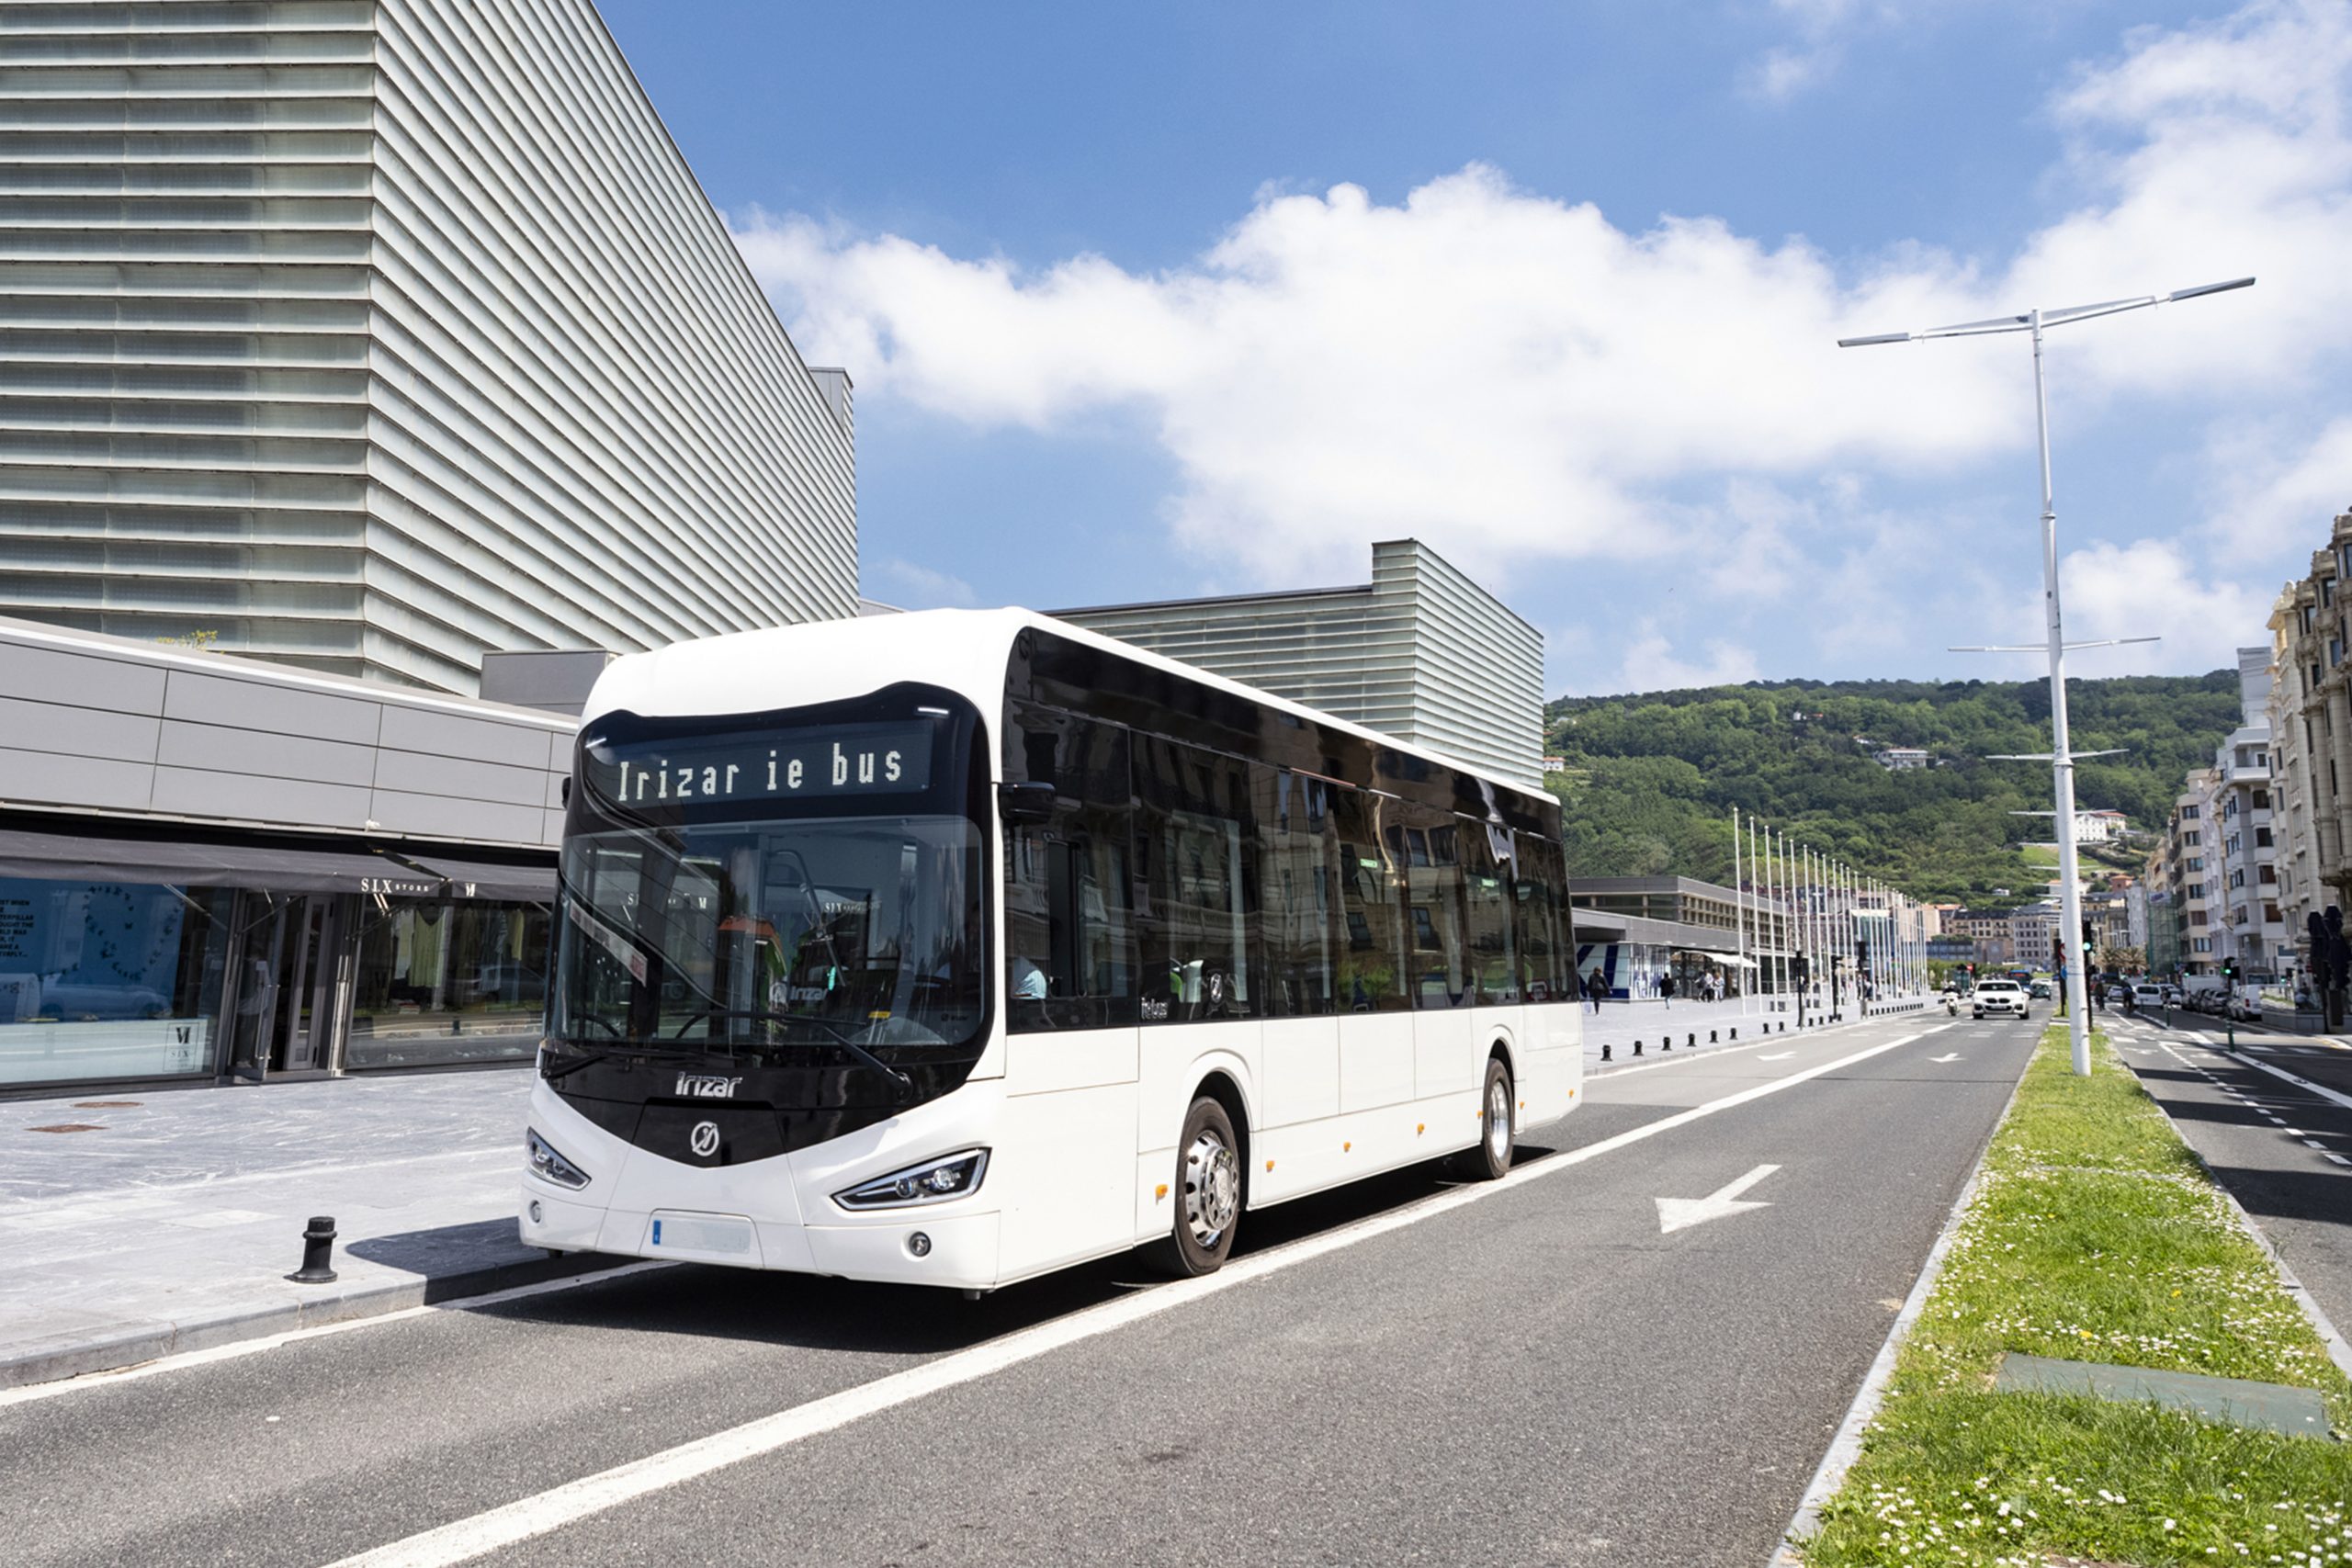 55 elektrycznych autobusów Irizar we flocie komunikacji miejskiej w Madrycie